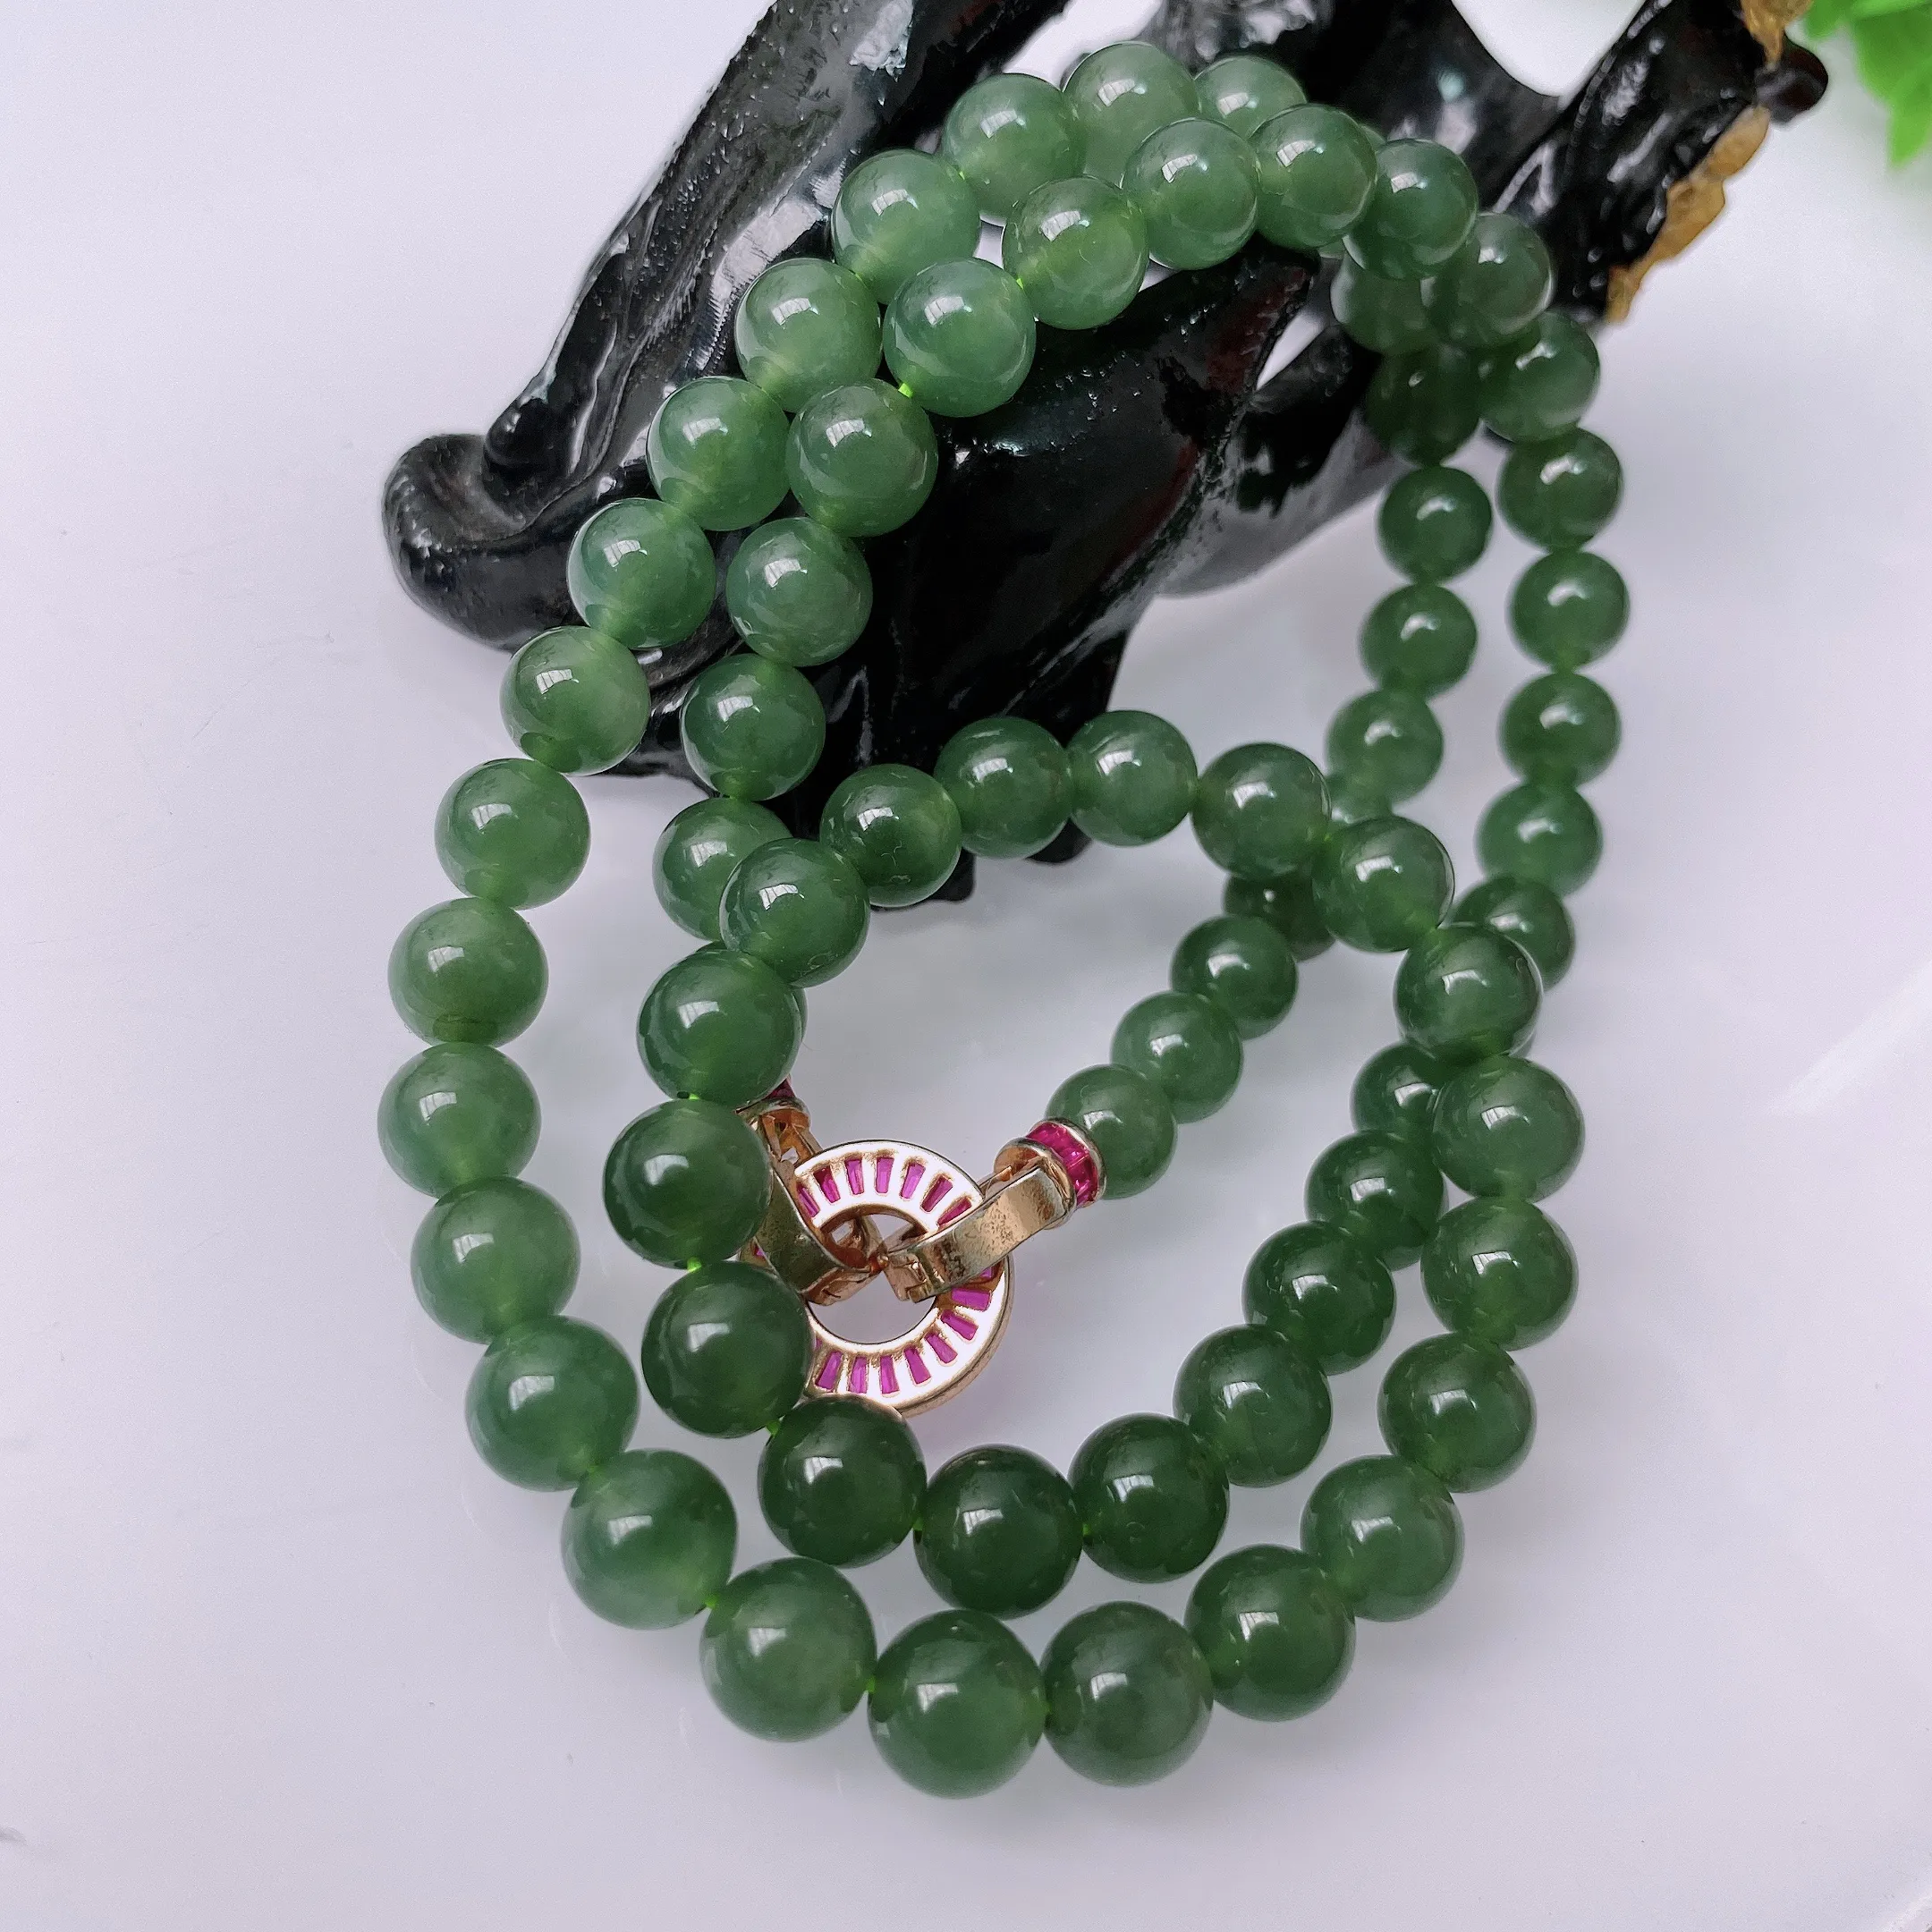 天然A货翡翠 满绿色圆珠项链   大圆珠 翡翠项链 （装饰扣）玉质细腻  冰清玉润  颜色漂亮 取一尺寸8.1mm  #41635068